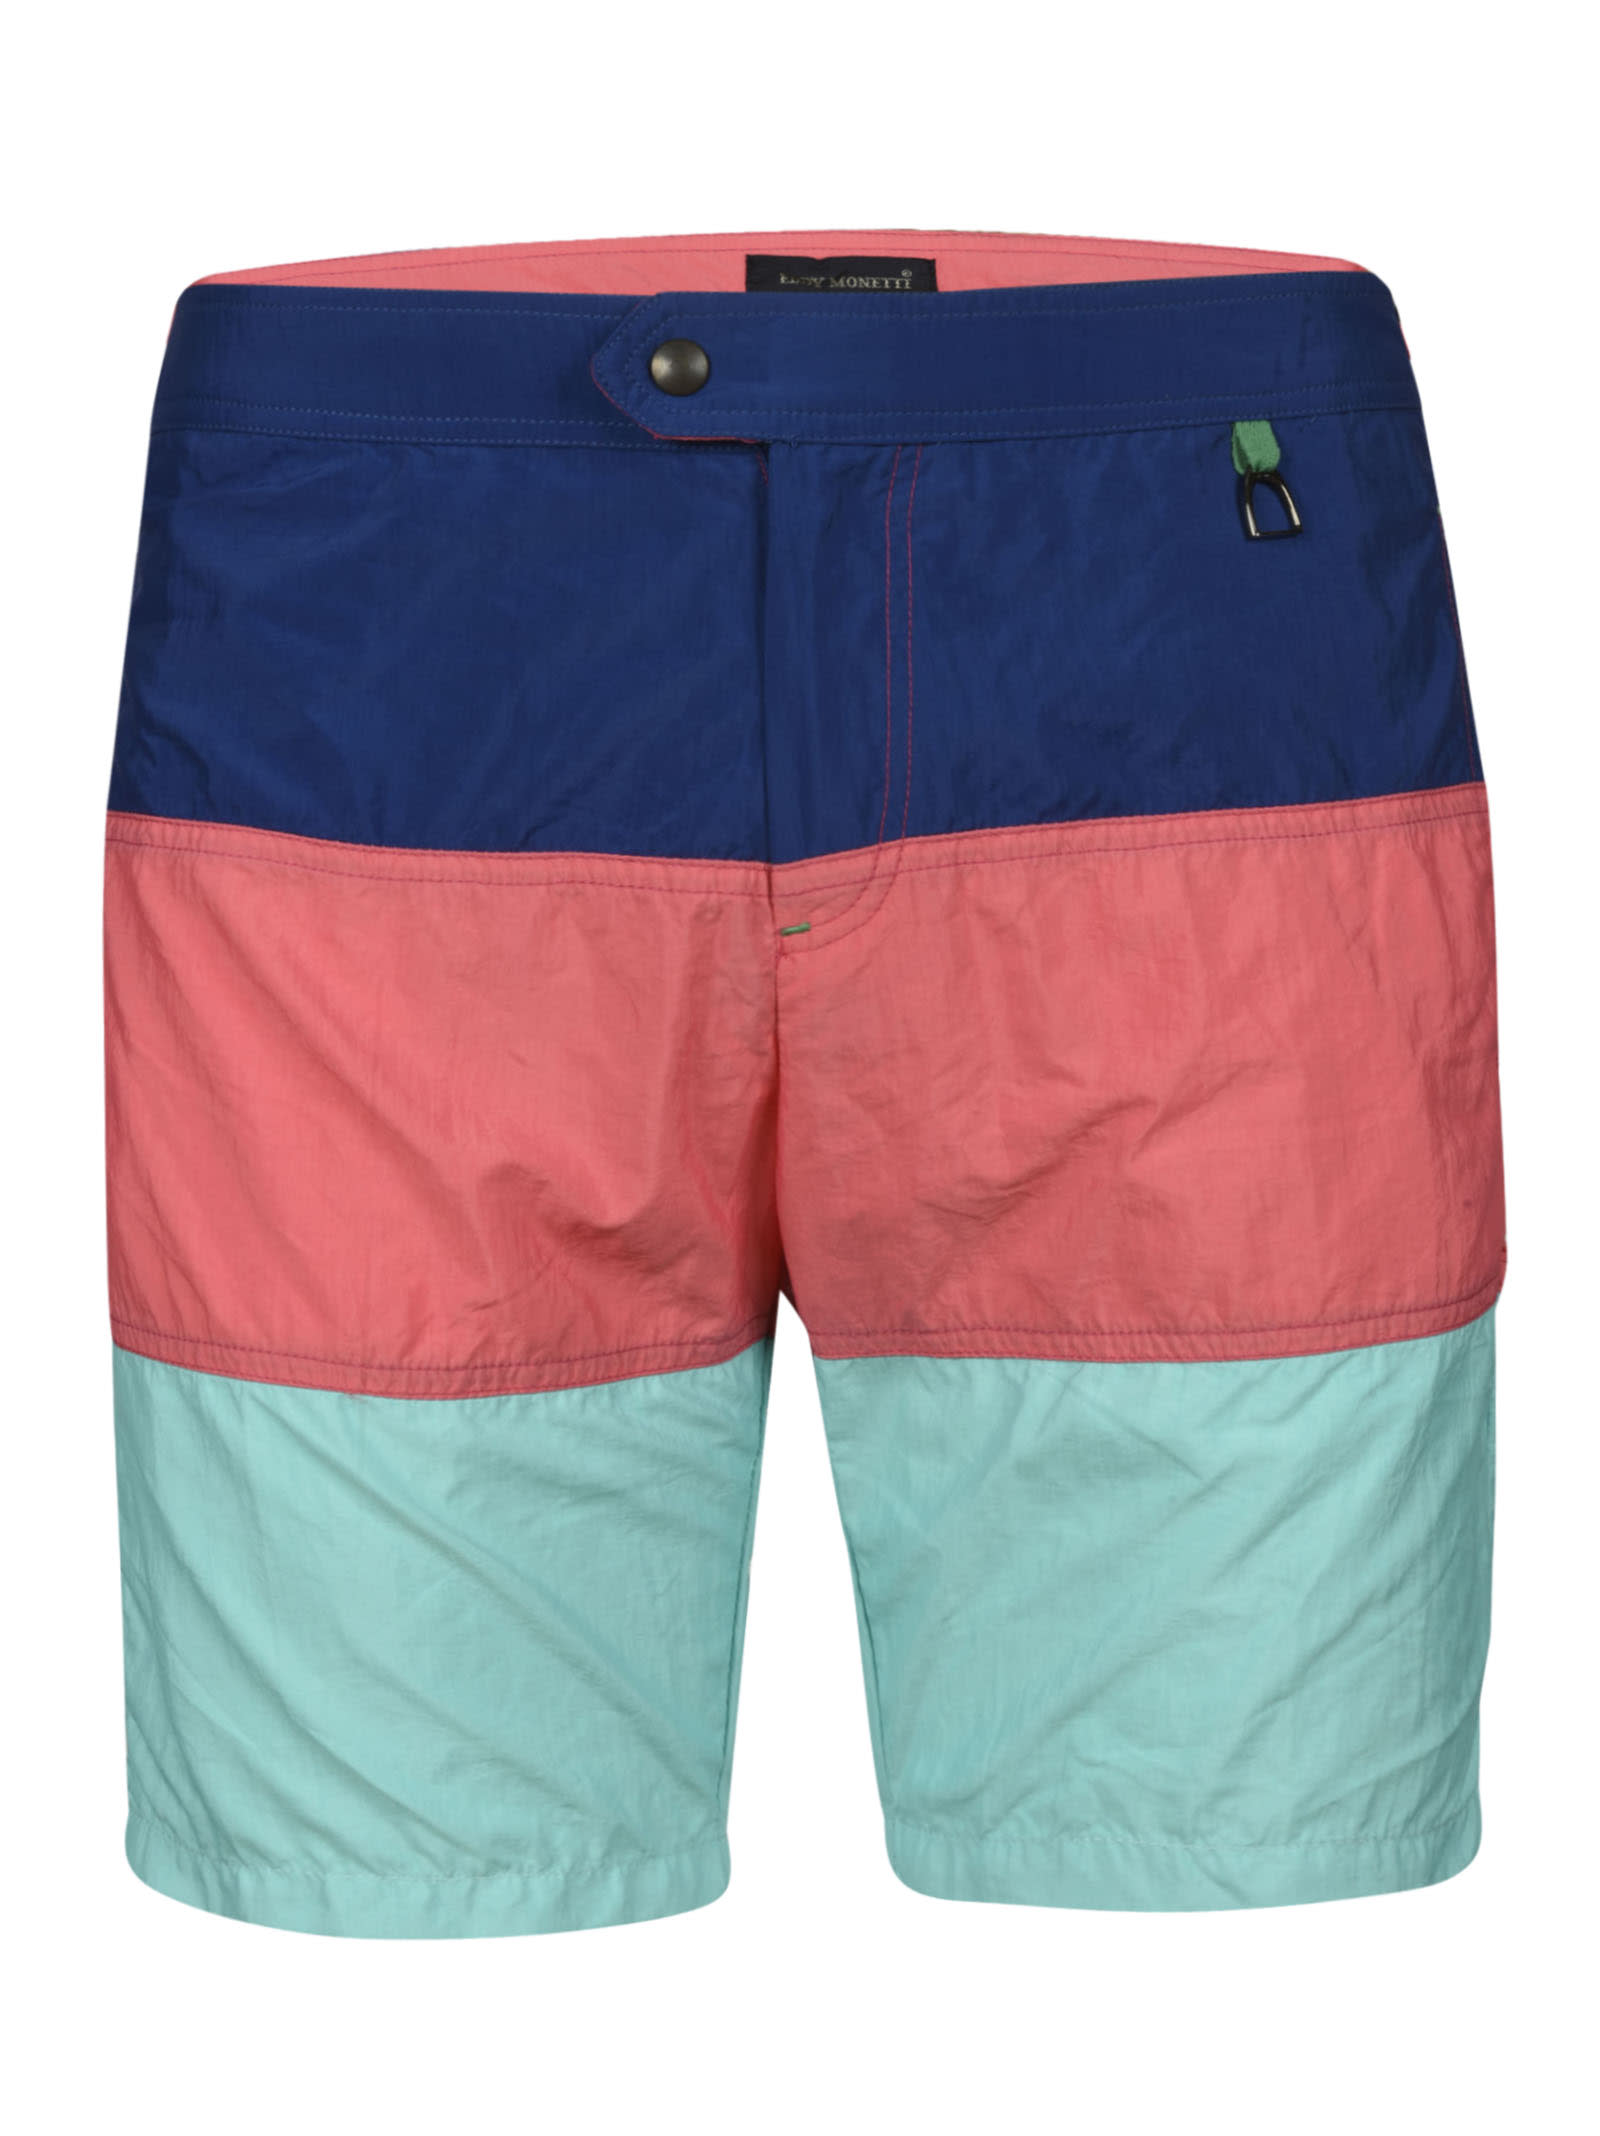 Eddy Monetti Tri-Color Buttoned Shorts